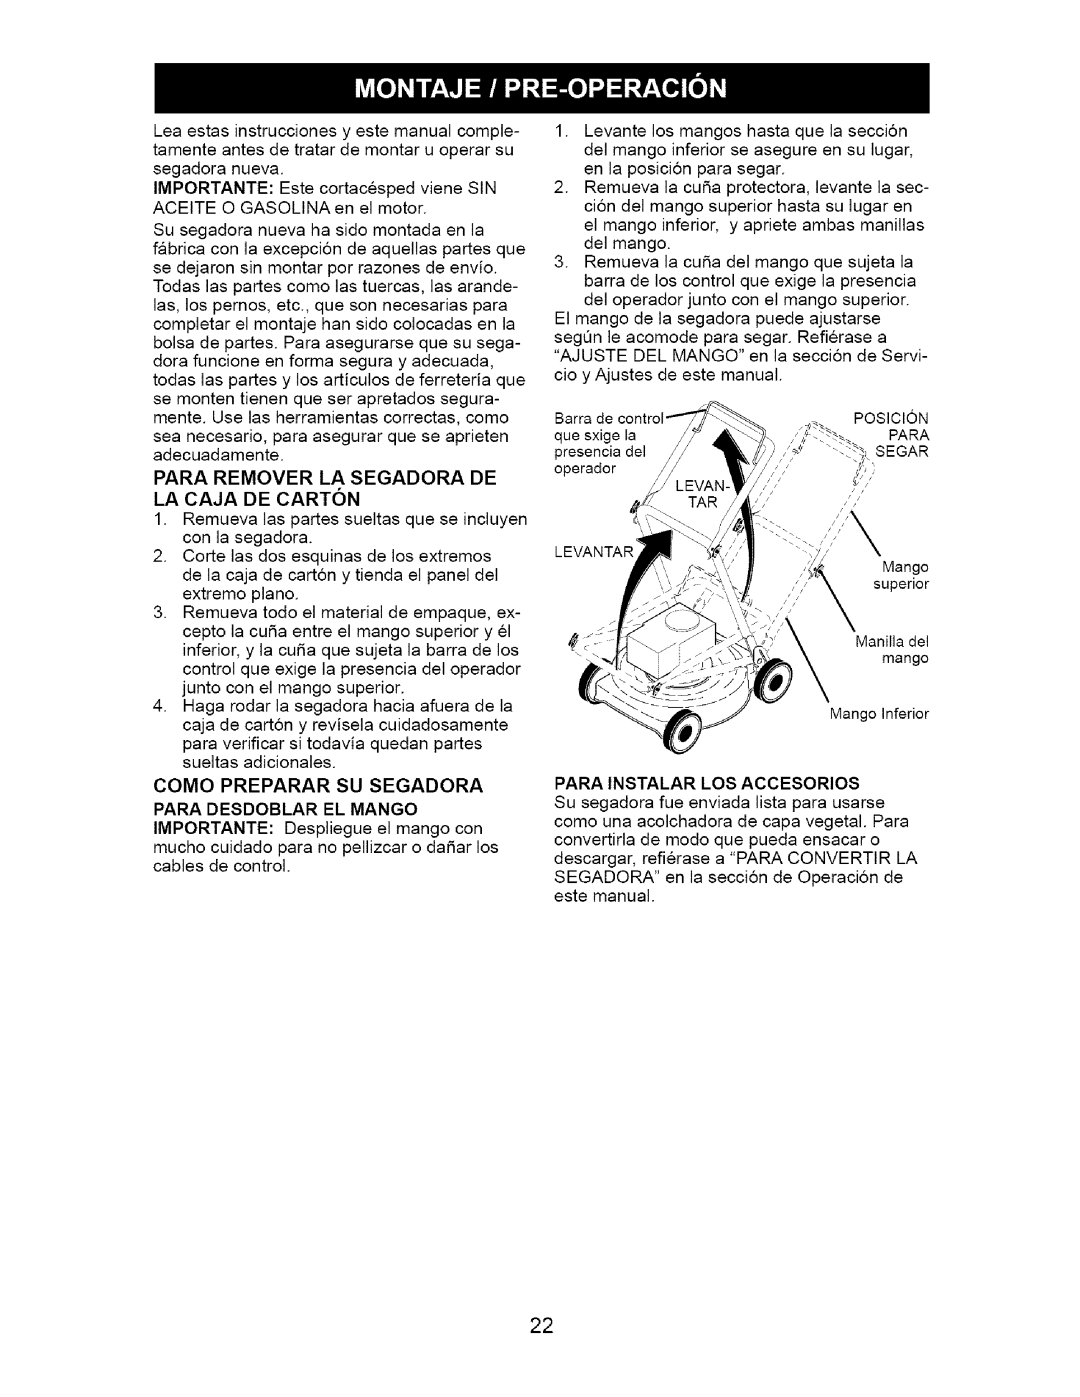 Craftsman 917.38514 owner manual Como Preparar Su Segadora Para Desdoblar El Mango, Para Instalar Los Accesorios 